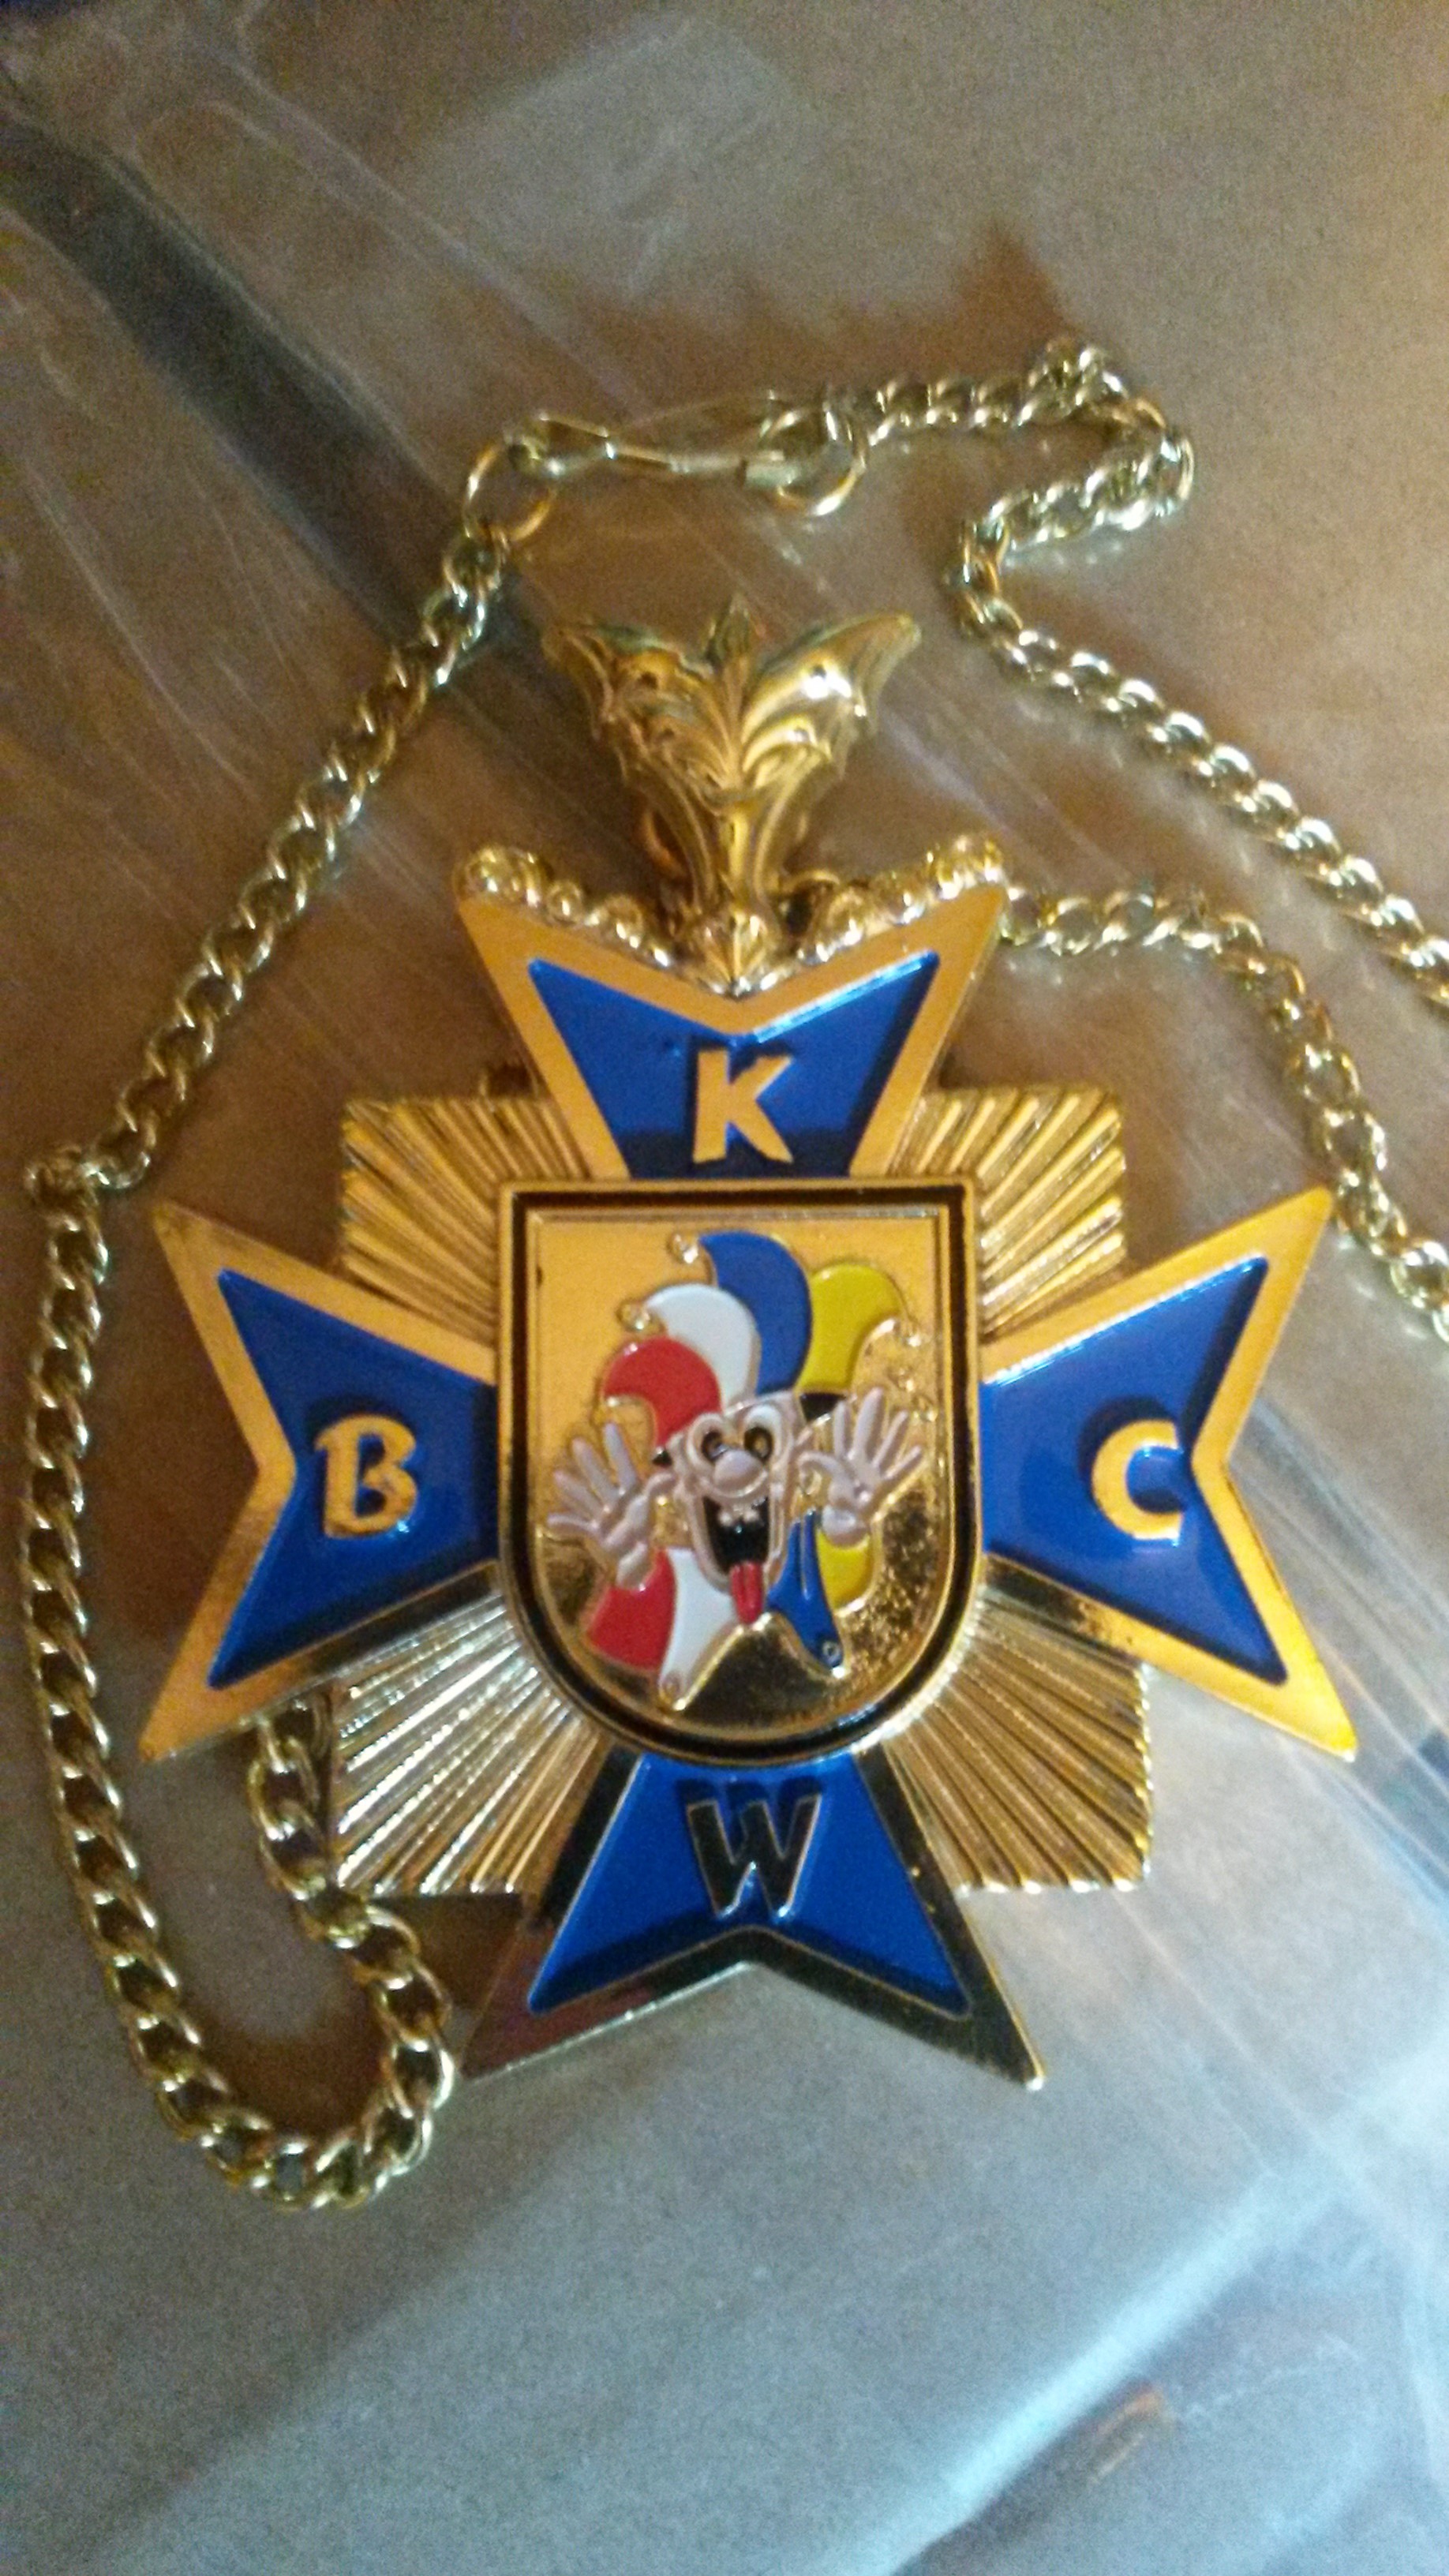 Blaues Ehrenkreuz verliehen für besondere Dienste